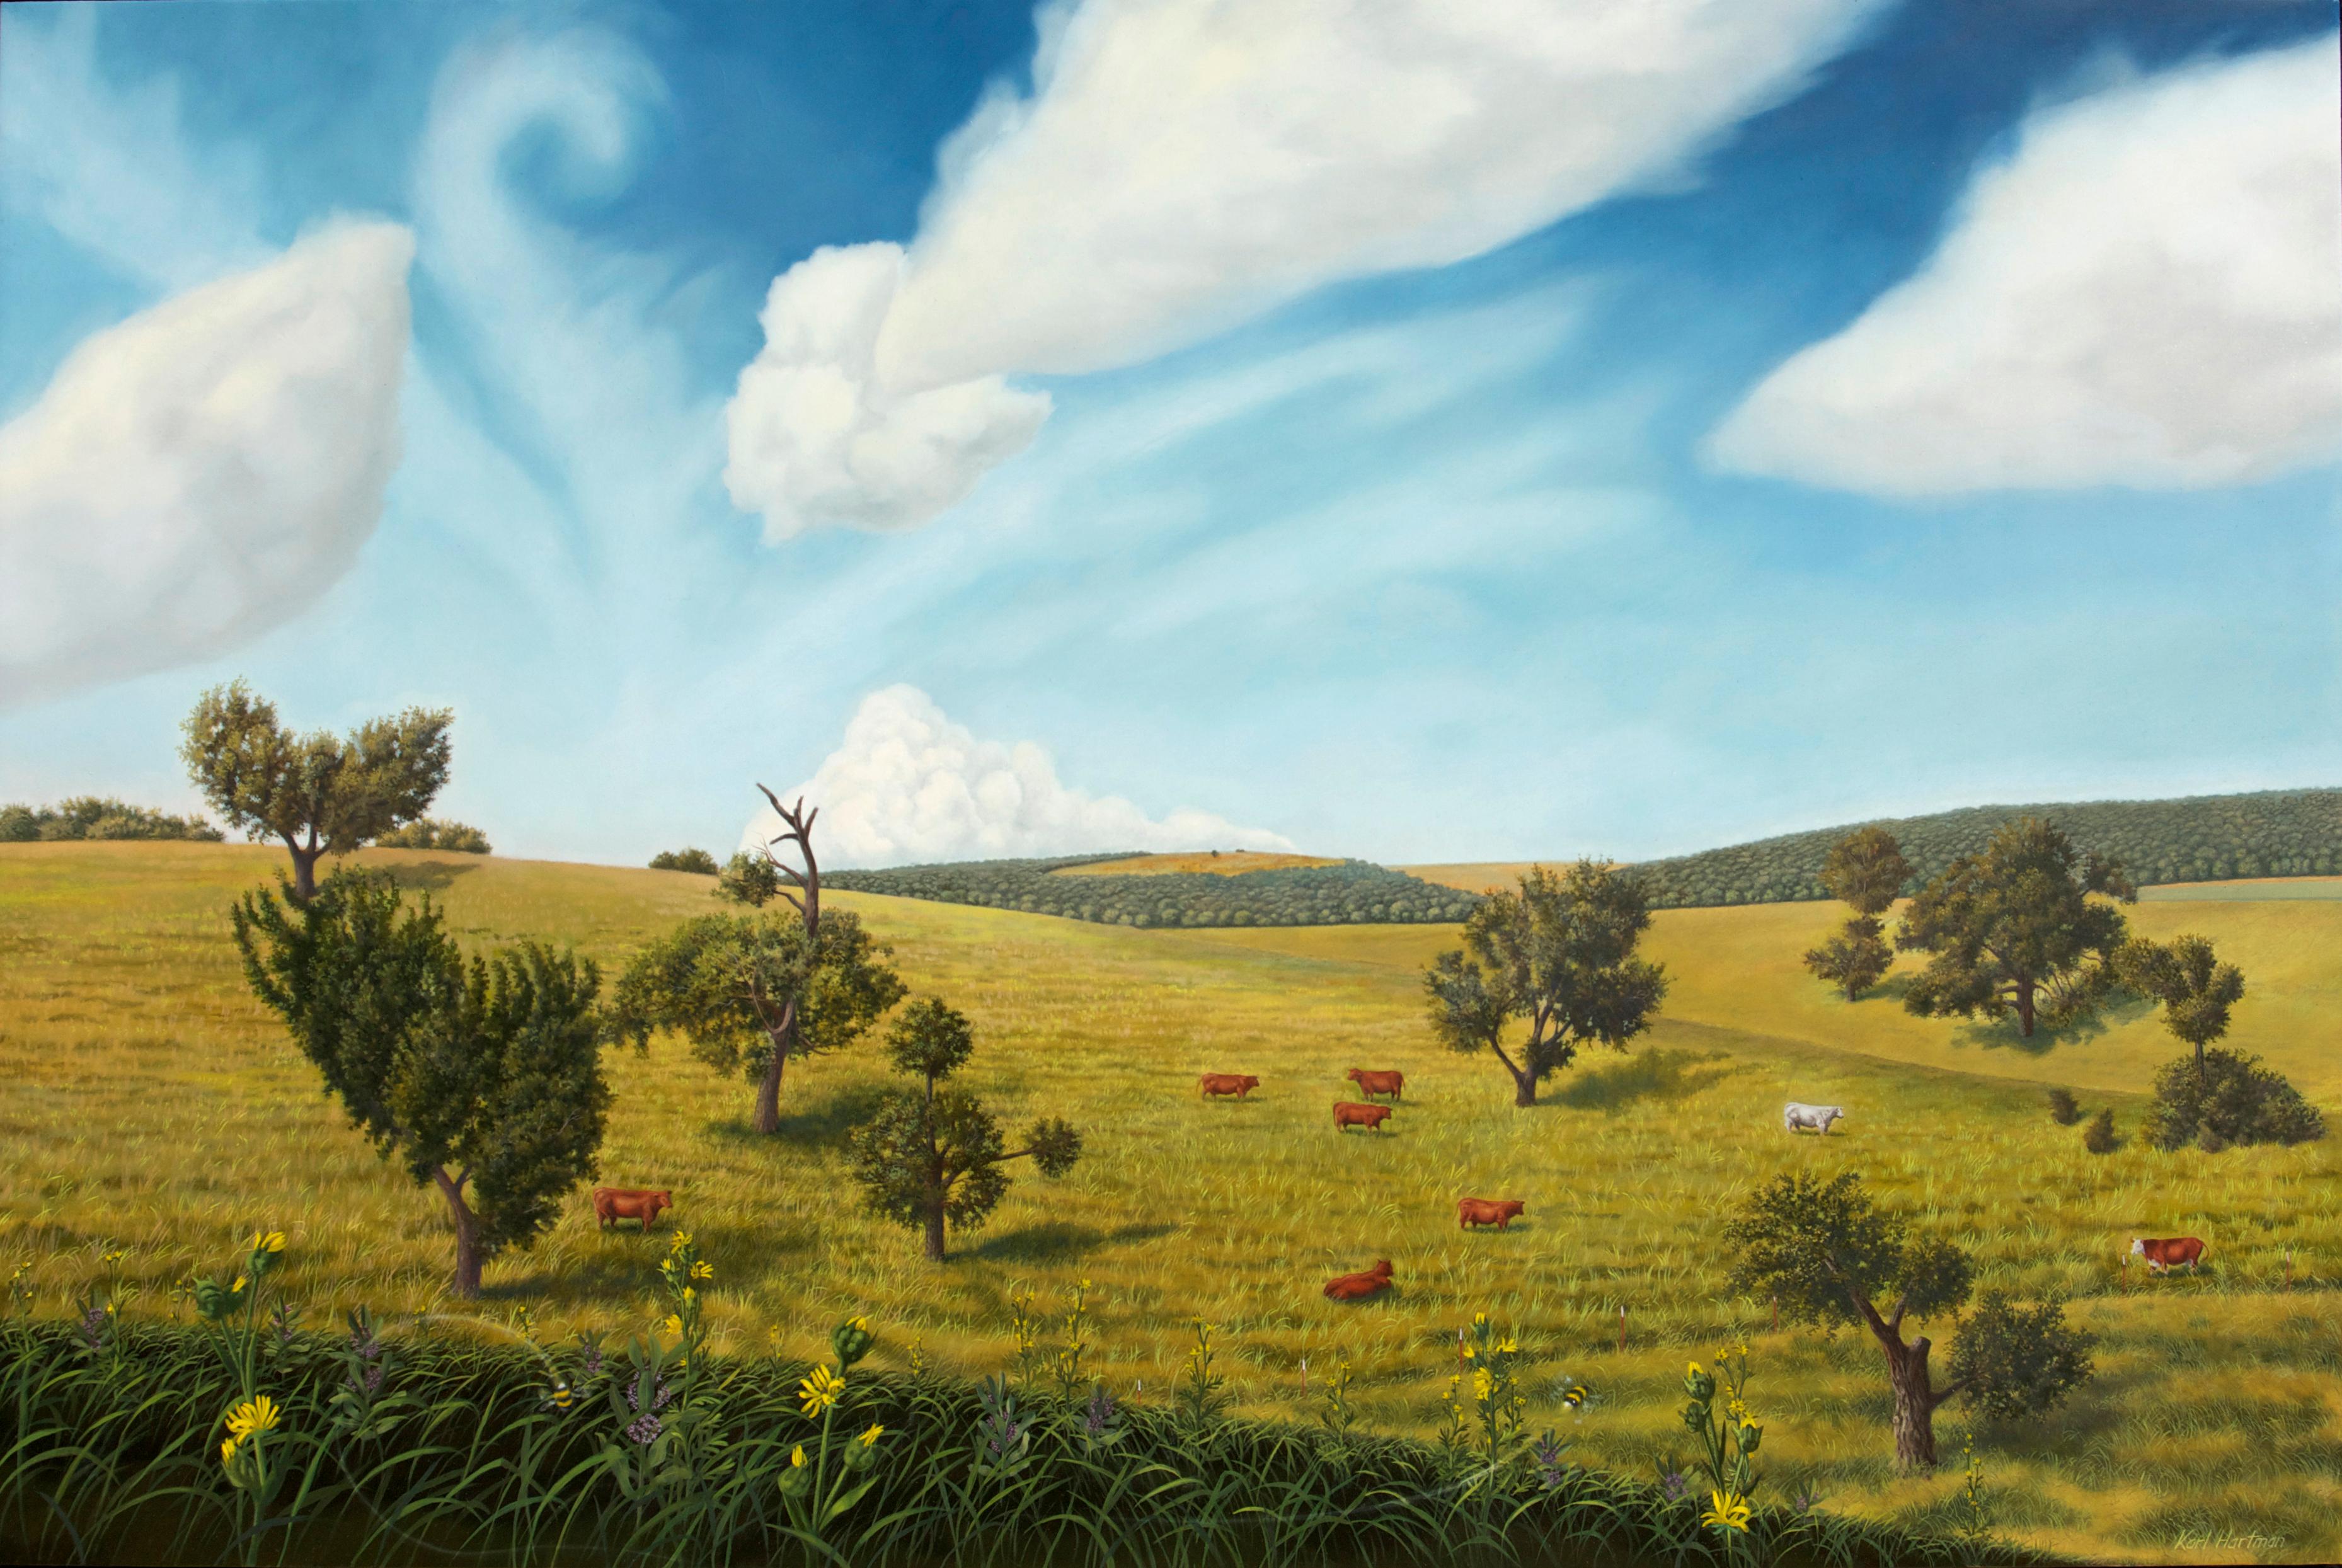 Landscape Painting Karl Hartman - Jour de juin, peinture à l'huile pastorale surréaliste